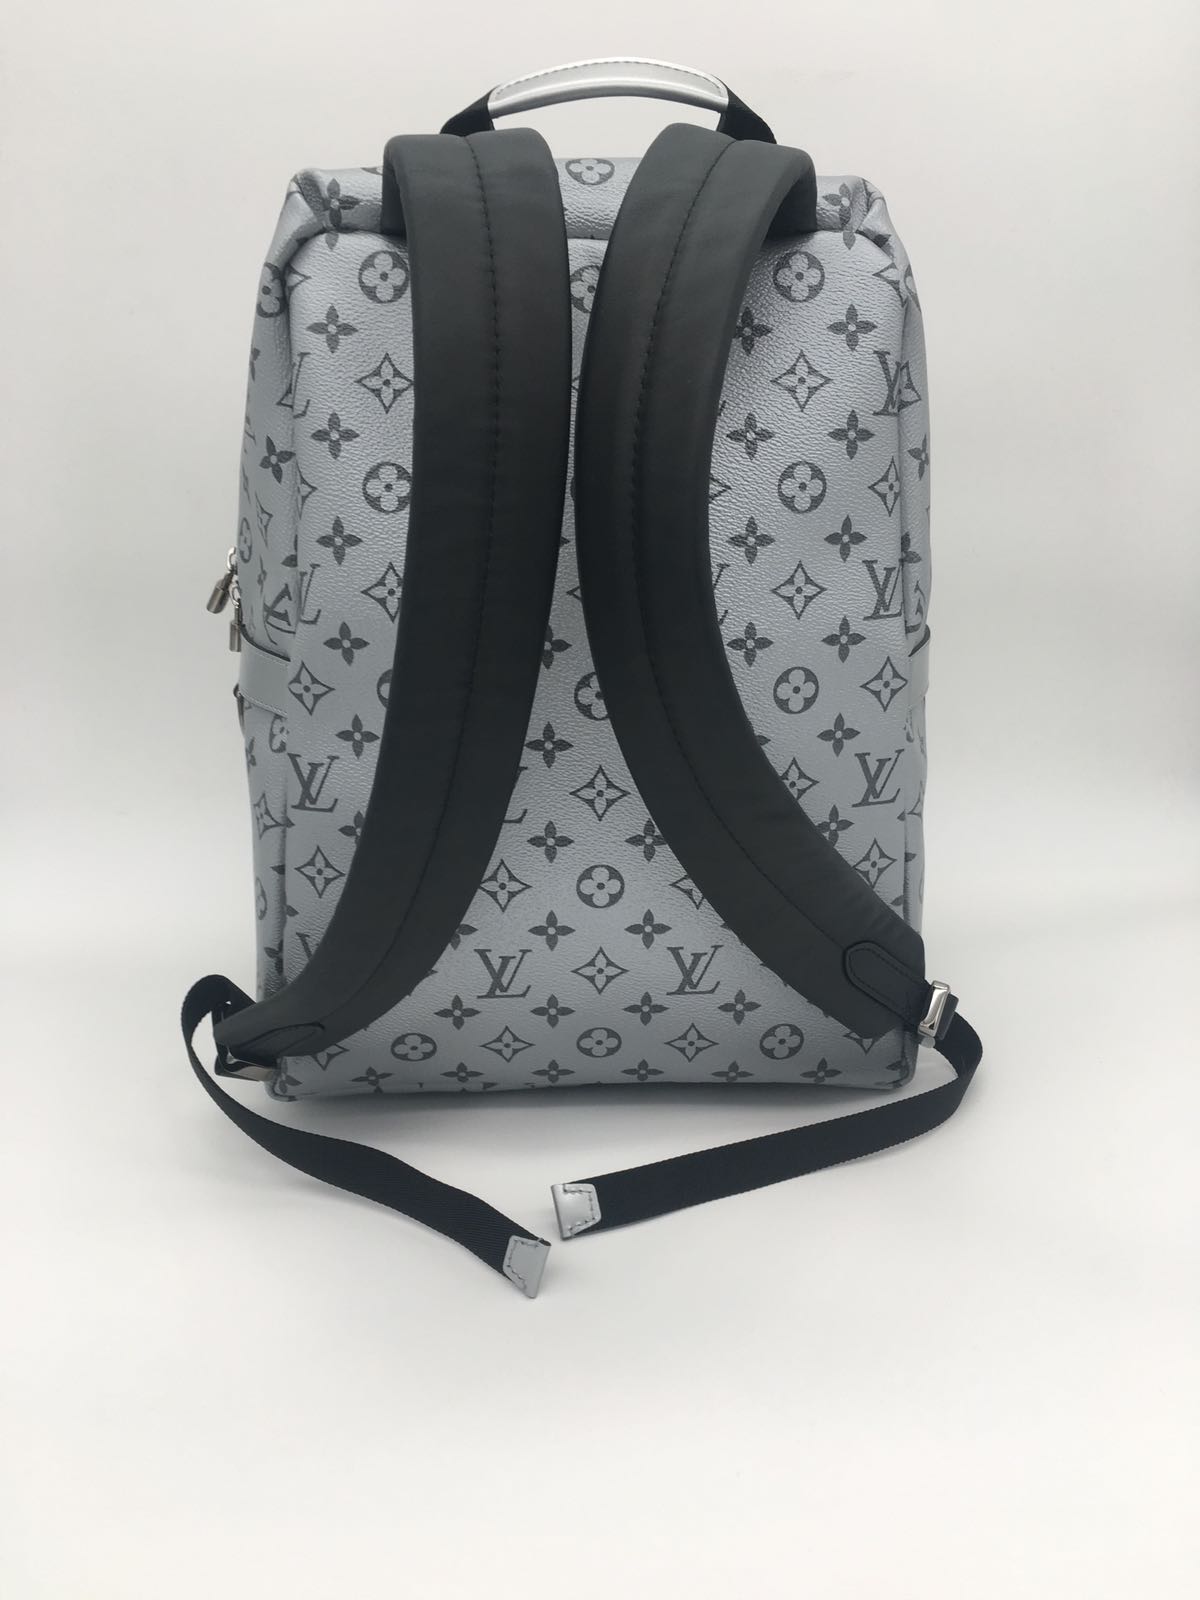 Louis Vuitton |Apollo Backpack Silver Metallic | M43845– The-Collectory